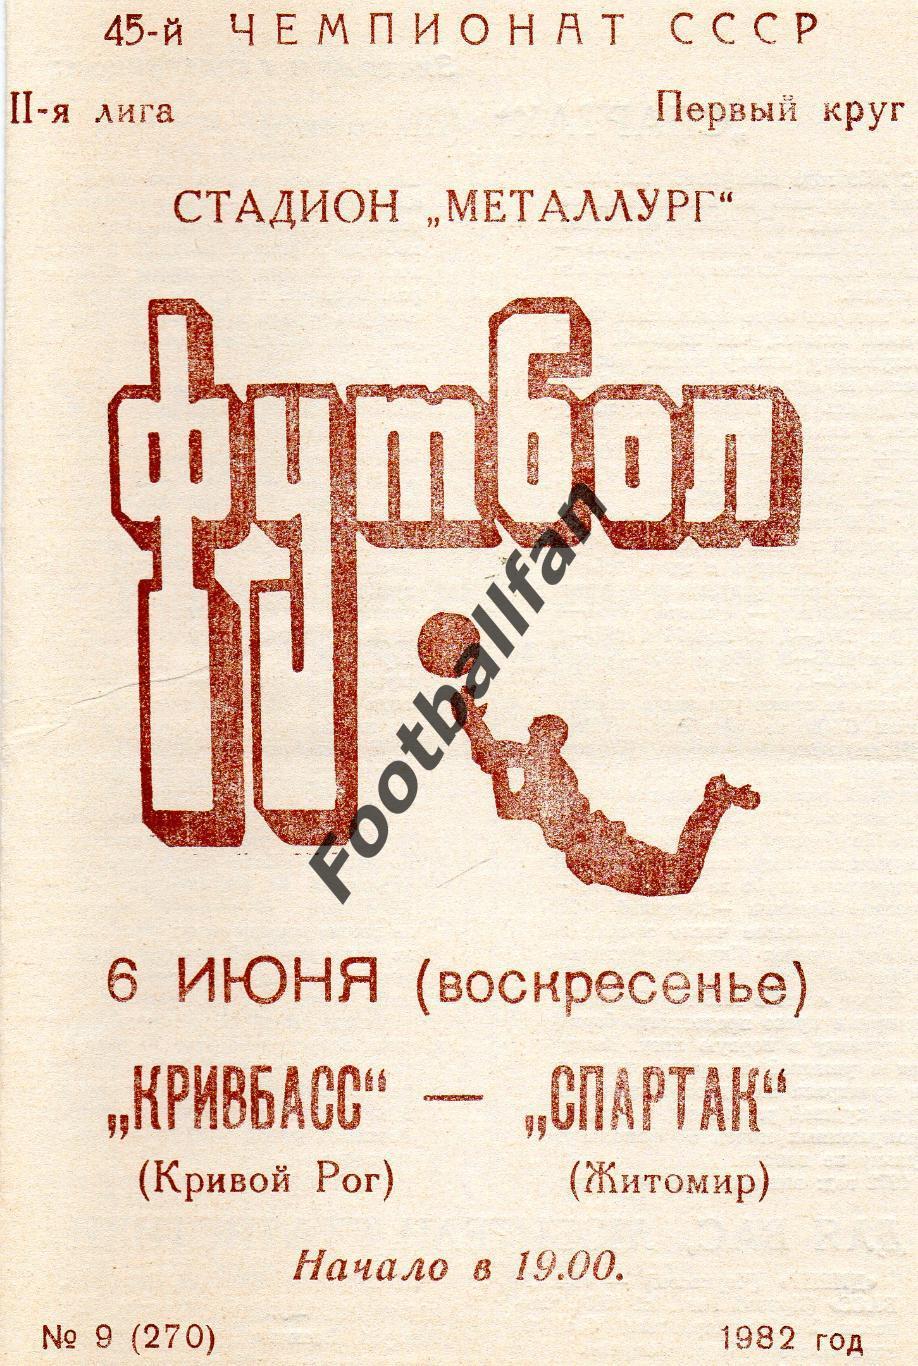 Кривбасс Кривой Рог - Спартак Житомир 06.06.1982